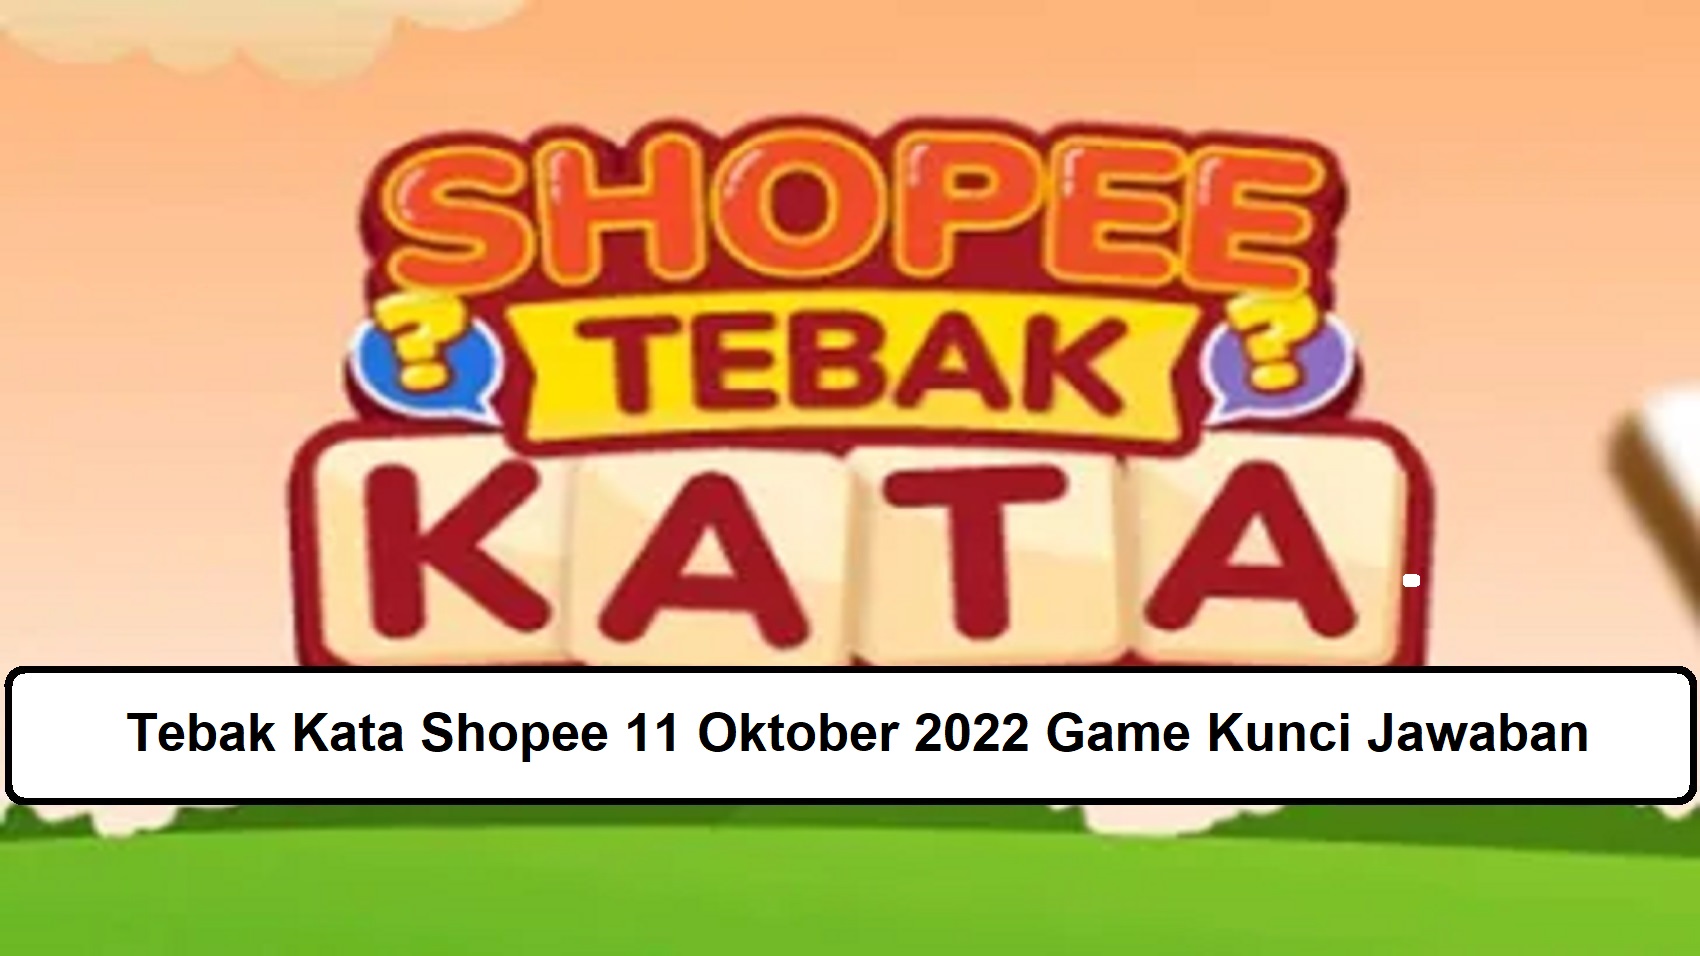 Tebak Kata Shopee 11 Oktober 2022 Game Kunci Jawaban